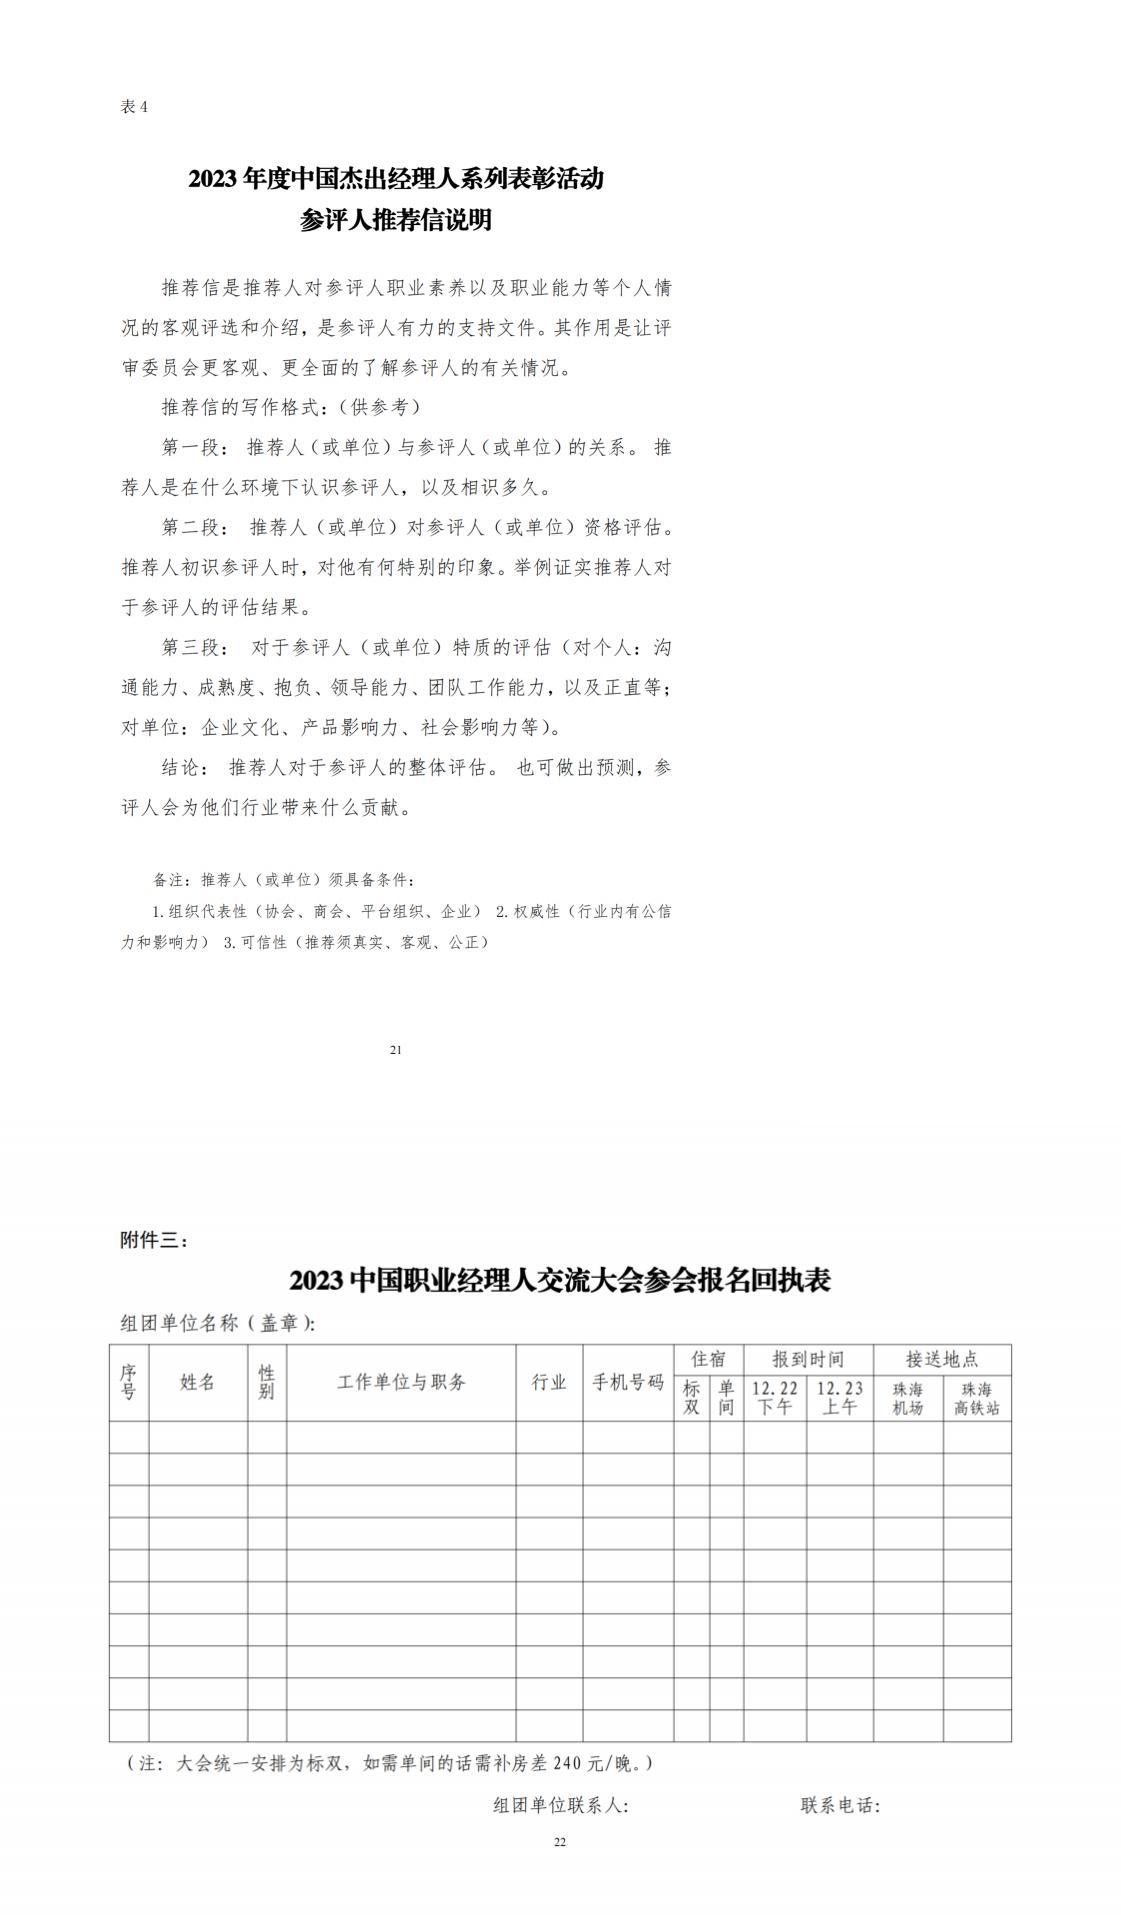 2023中国职业经理人交流大会通知(1)_纯图版_01.jpg